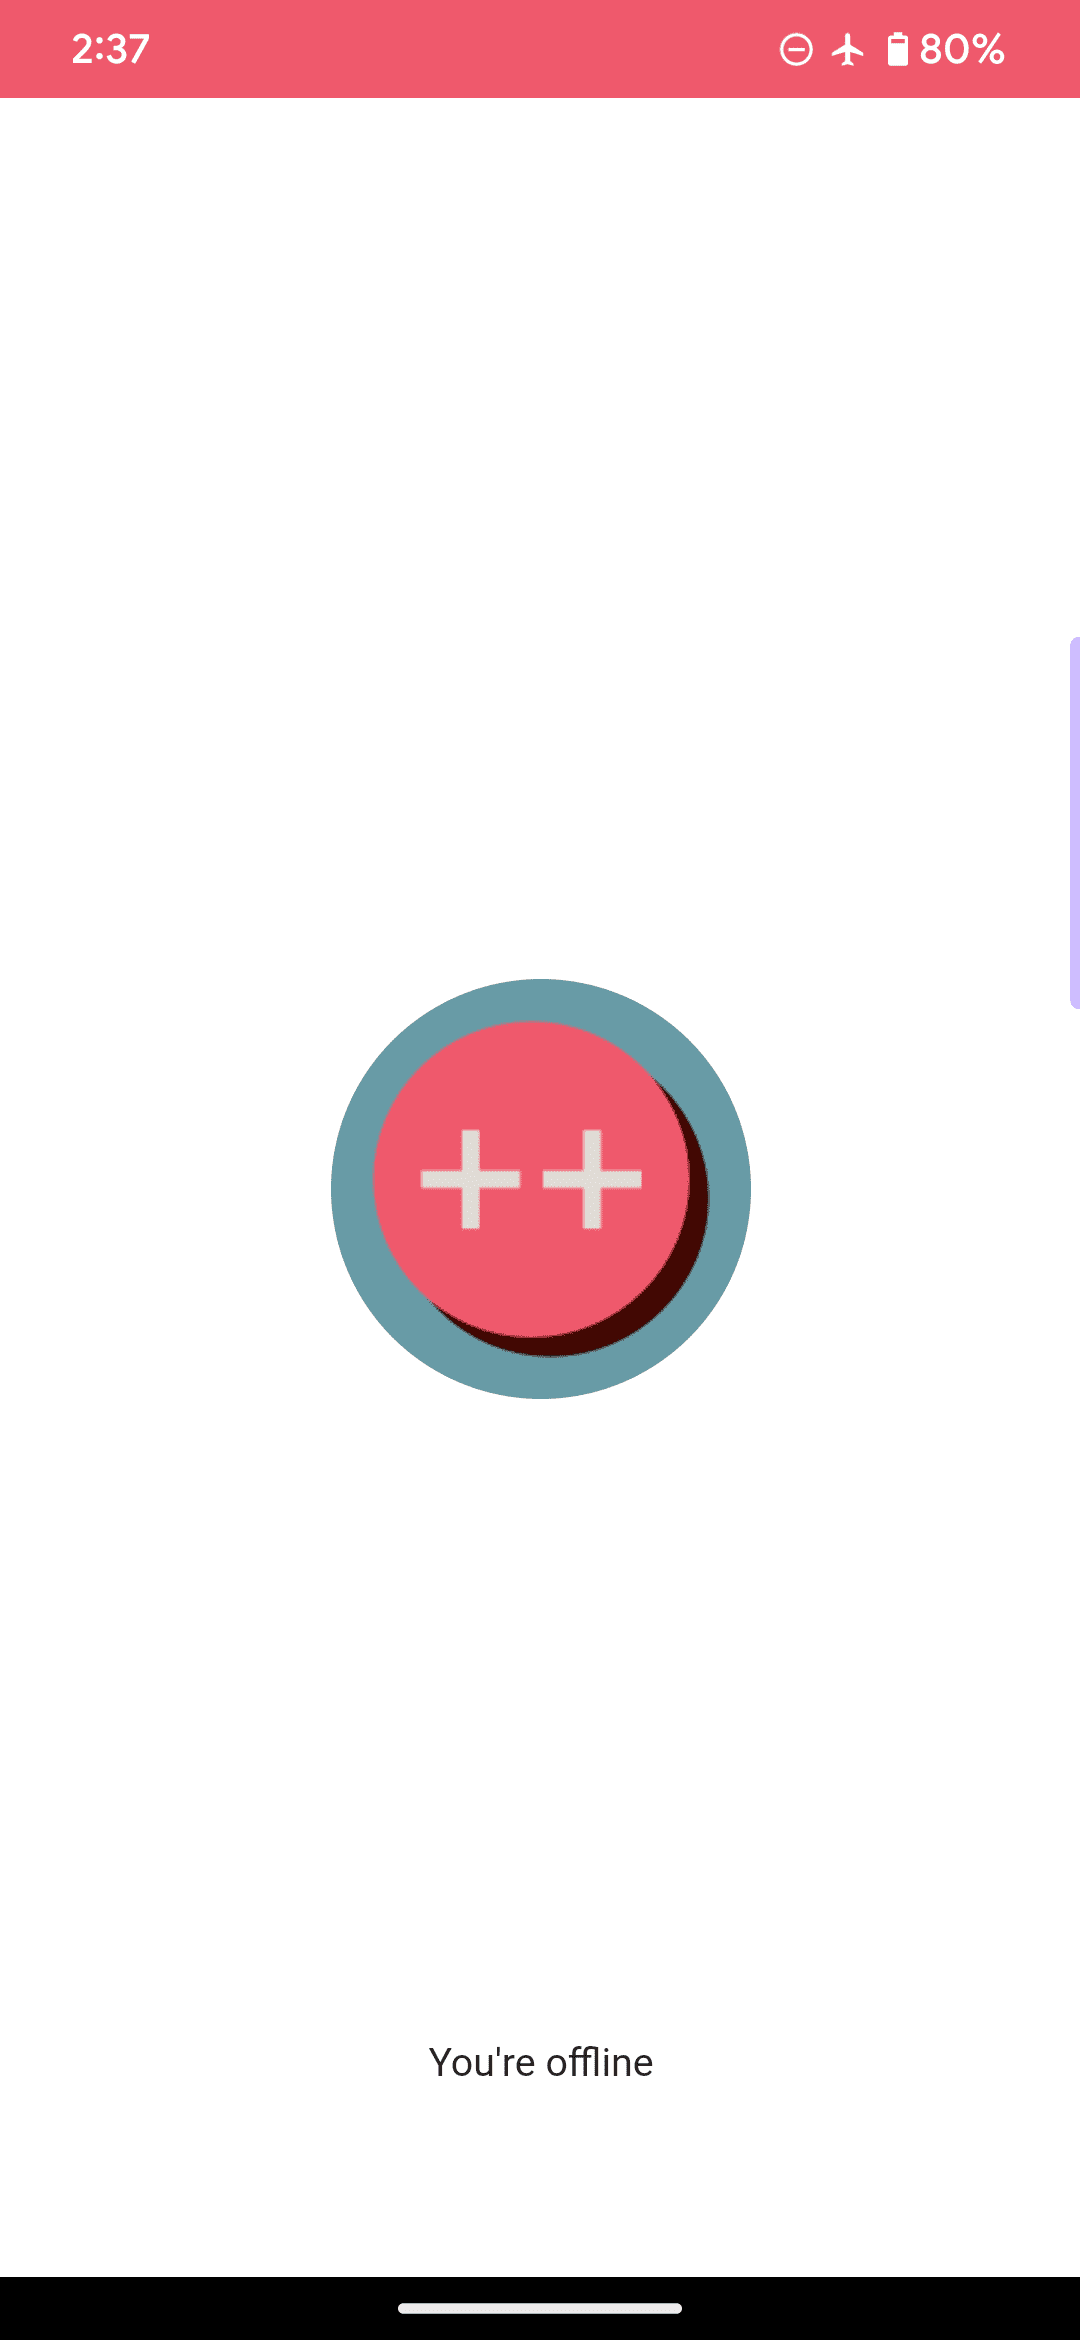 Halaman offline default untuk contoh aplikasi web, dengan logo berupa lingkaran merah muda dan dua tanda plus, serta menyertakan pesan &#39;Anda sedang offline&#39;.